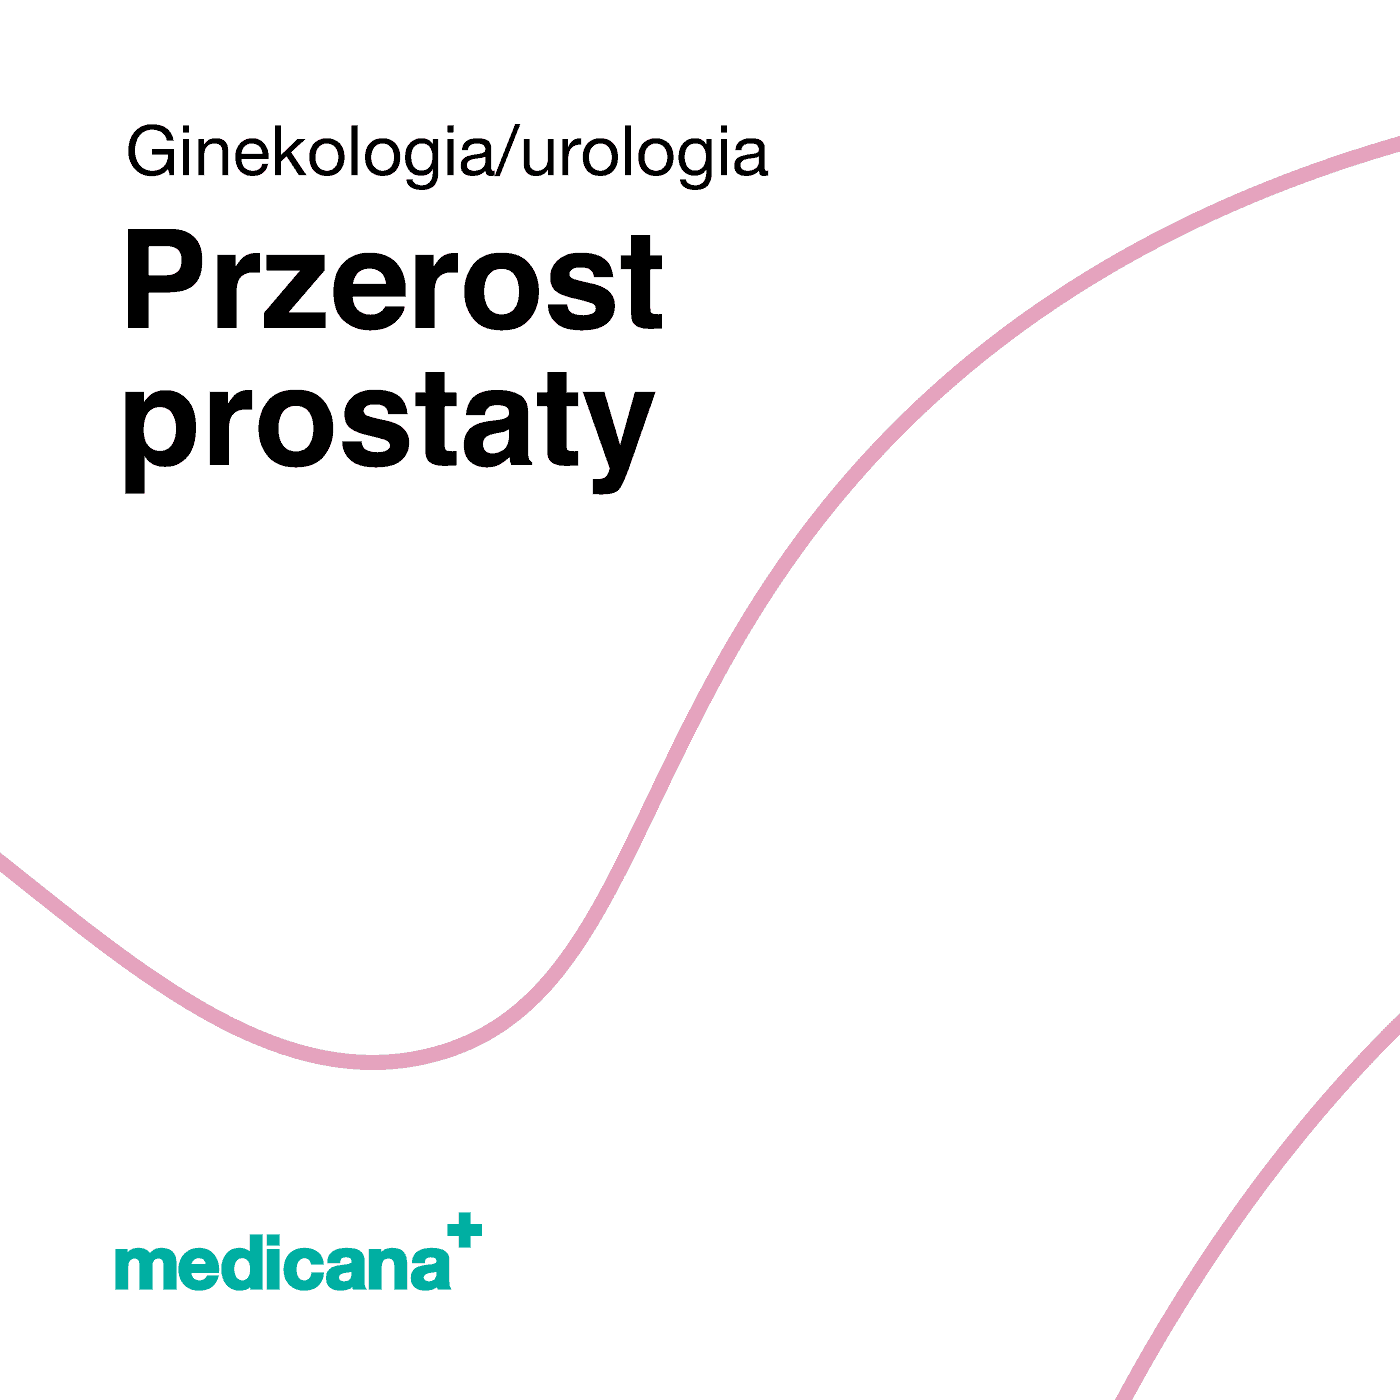 Grafika, białe tło różową kreską, czarnym napisem Ginekologia / Urologia - Przerost prostaty i logo Medicana Centrum Terapii Medyczna Marihuana w lewym dolnym rogu.